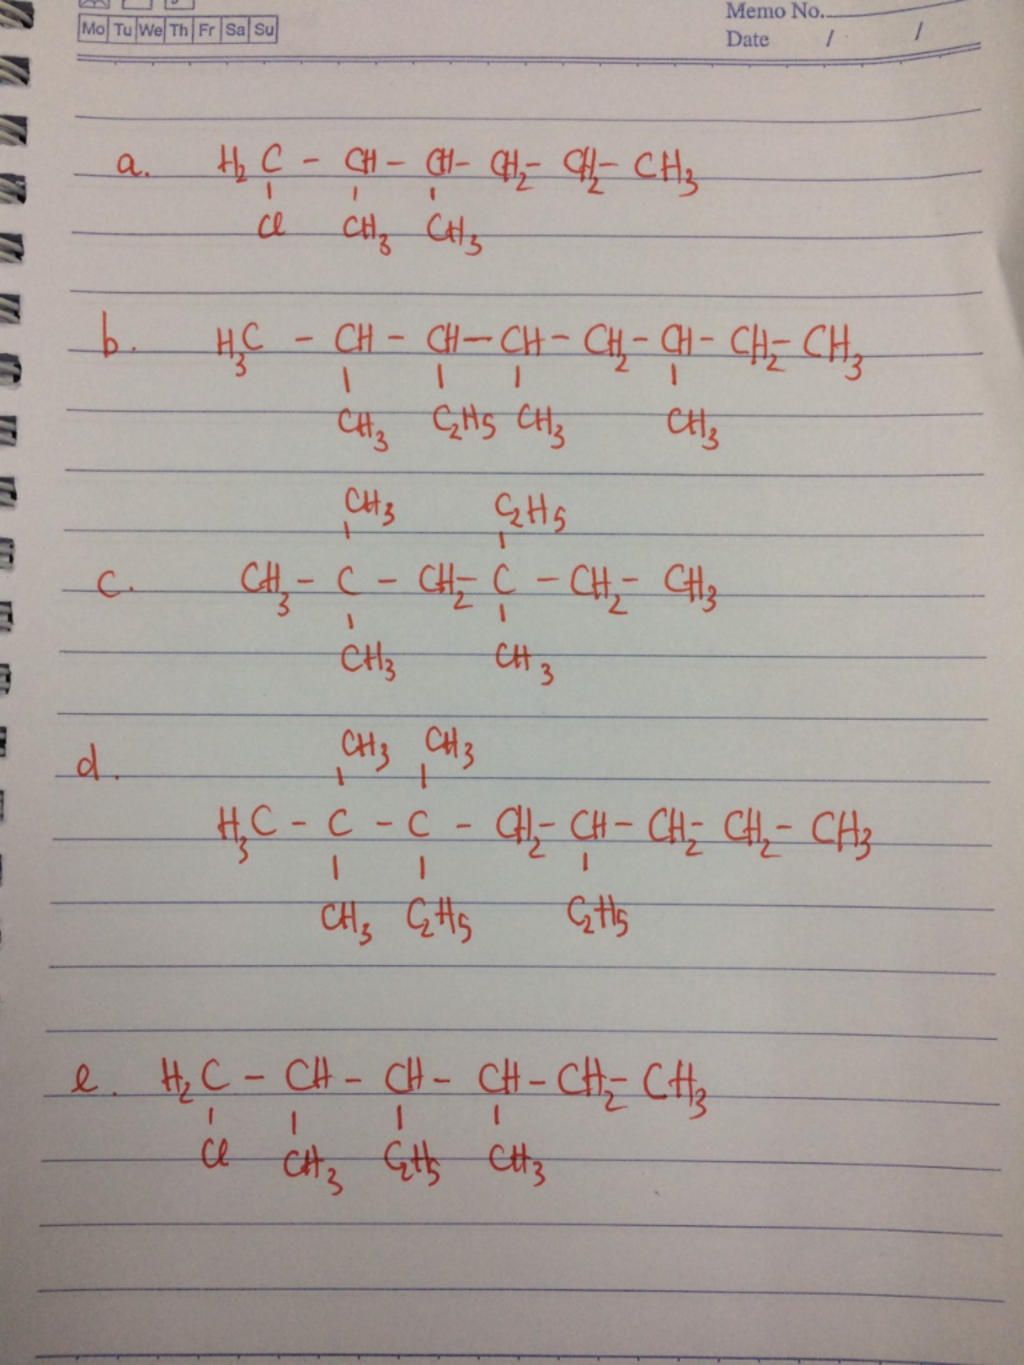 Các phản ứng hóa học quan trọng mà 4-etil-2,3-đimetylhexan có thể tham gia là gì?
